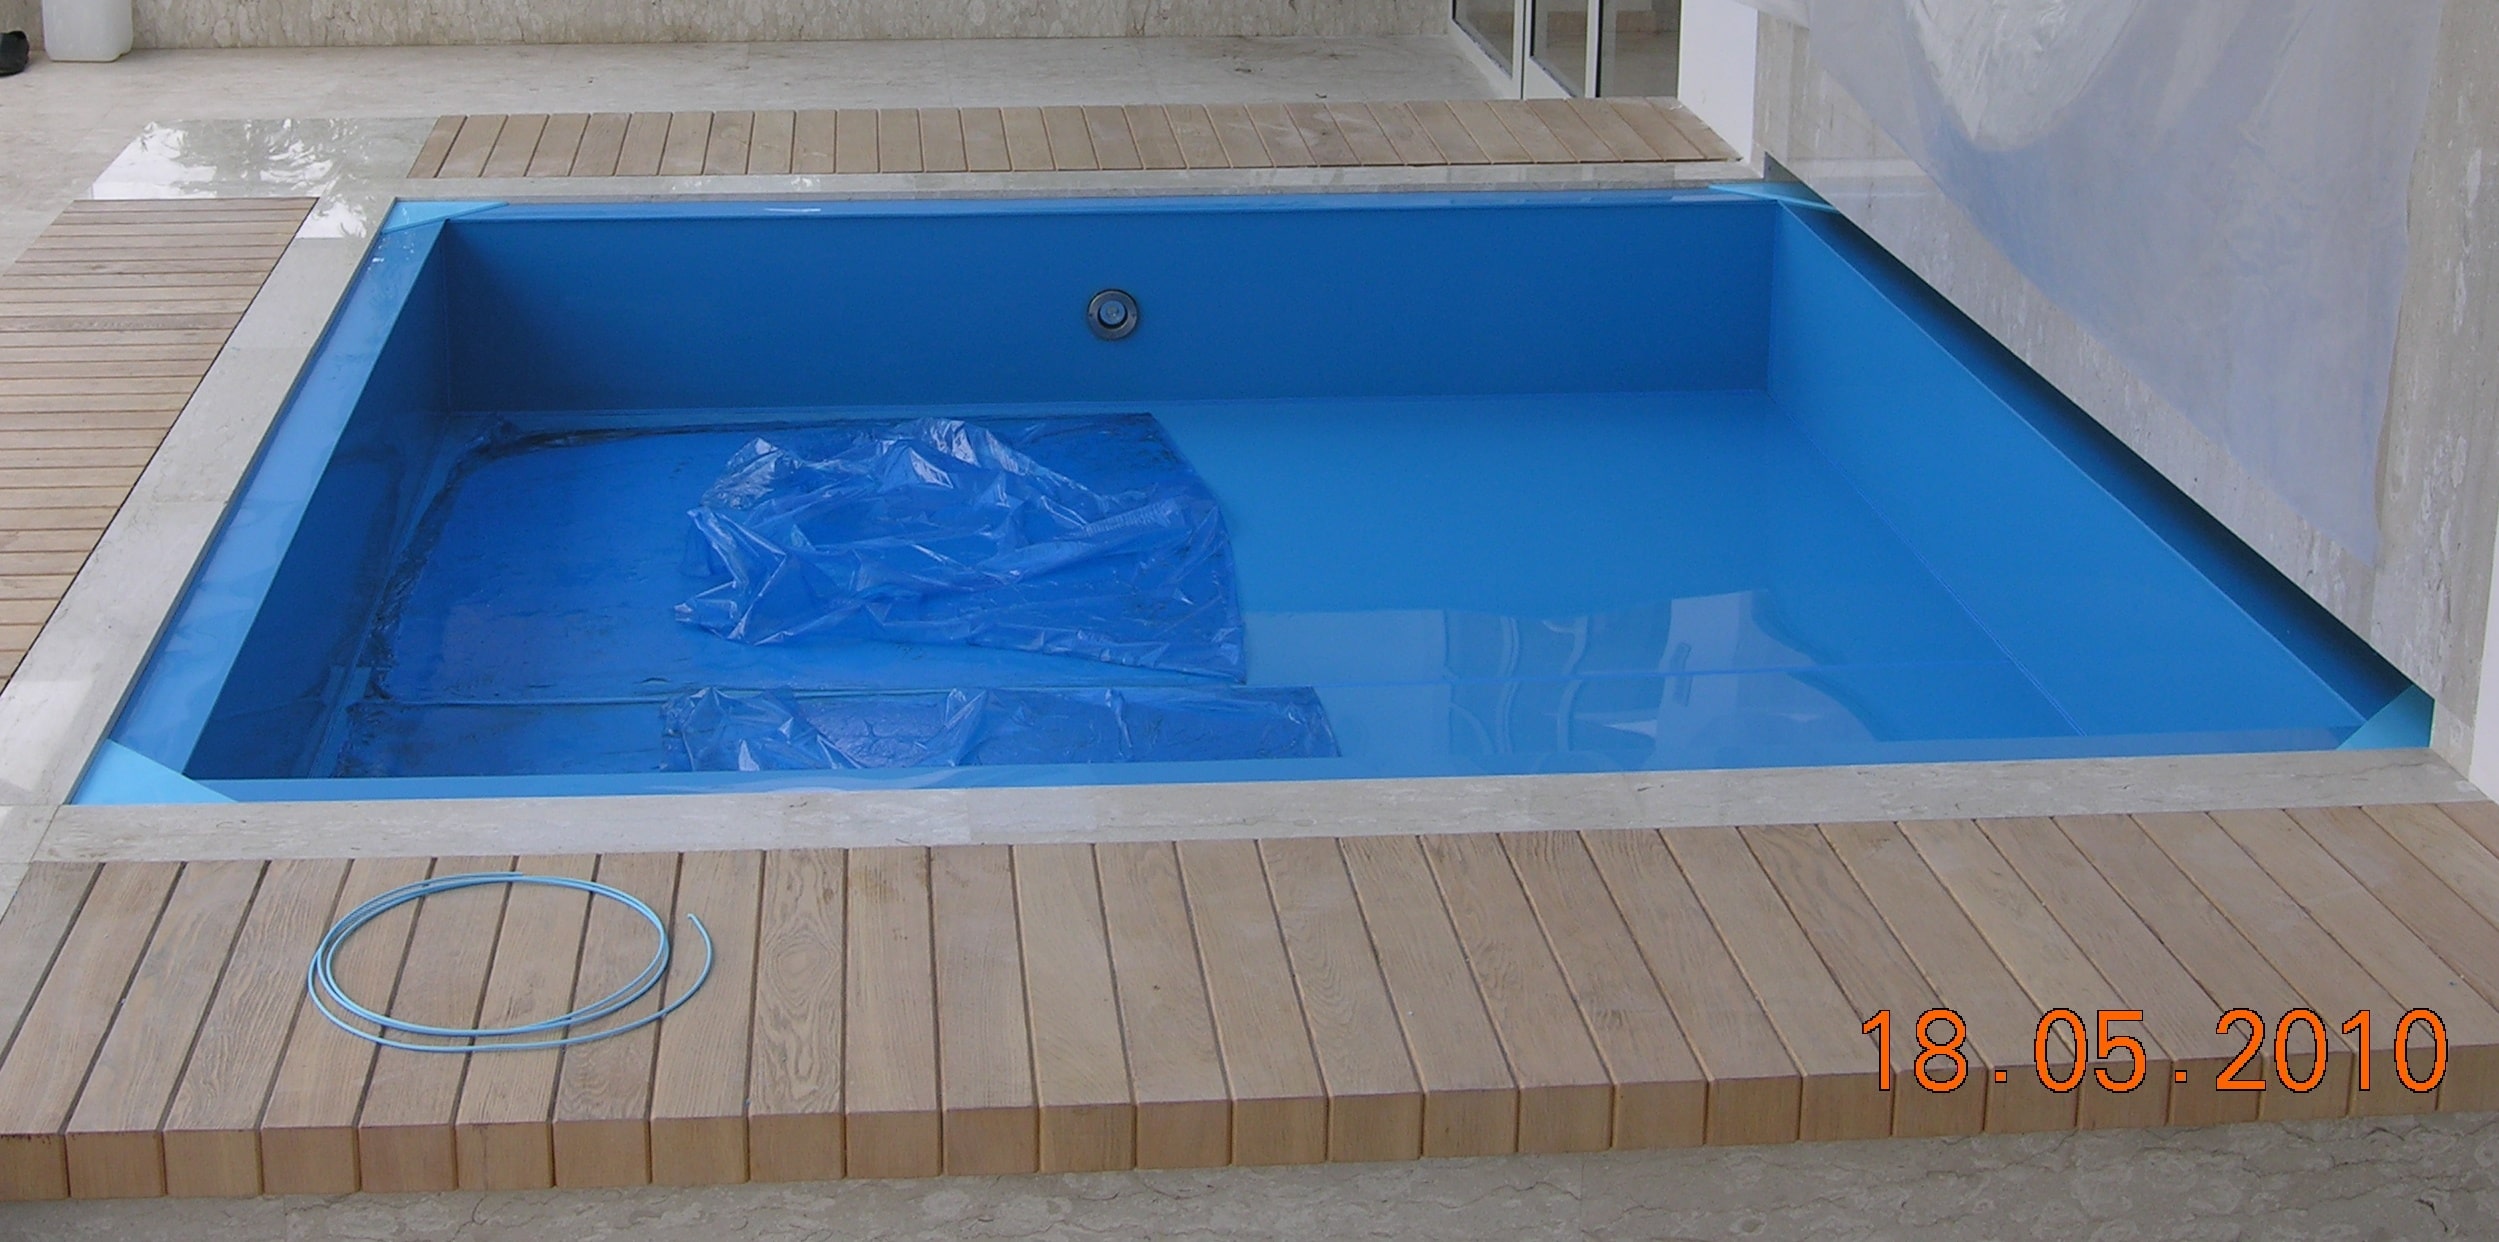 Пластиковый бассейн используется для украшения интерьеров помещений. Бассейны для украшения интерьеров помещений могут быть выполнены любых размеров, форм и цветов.